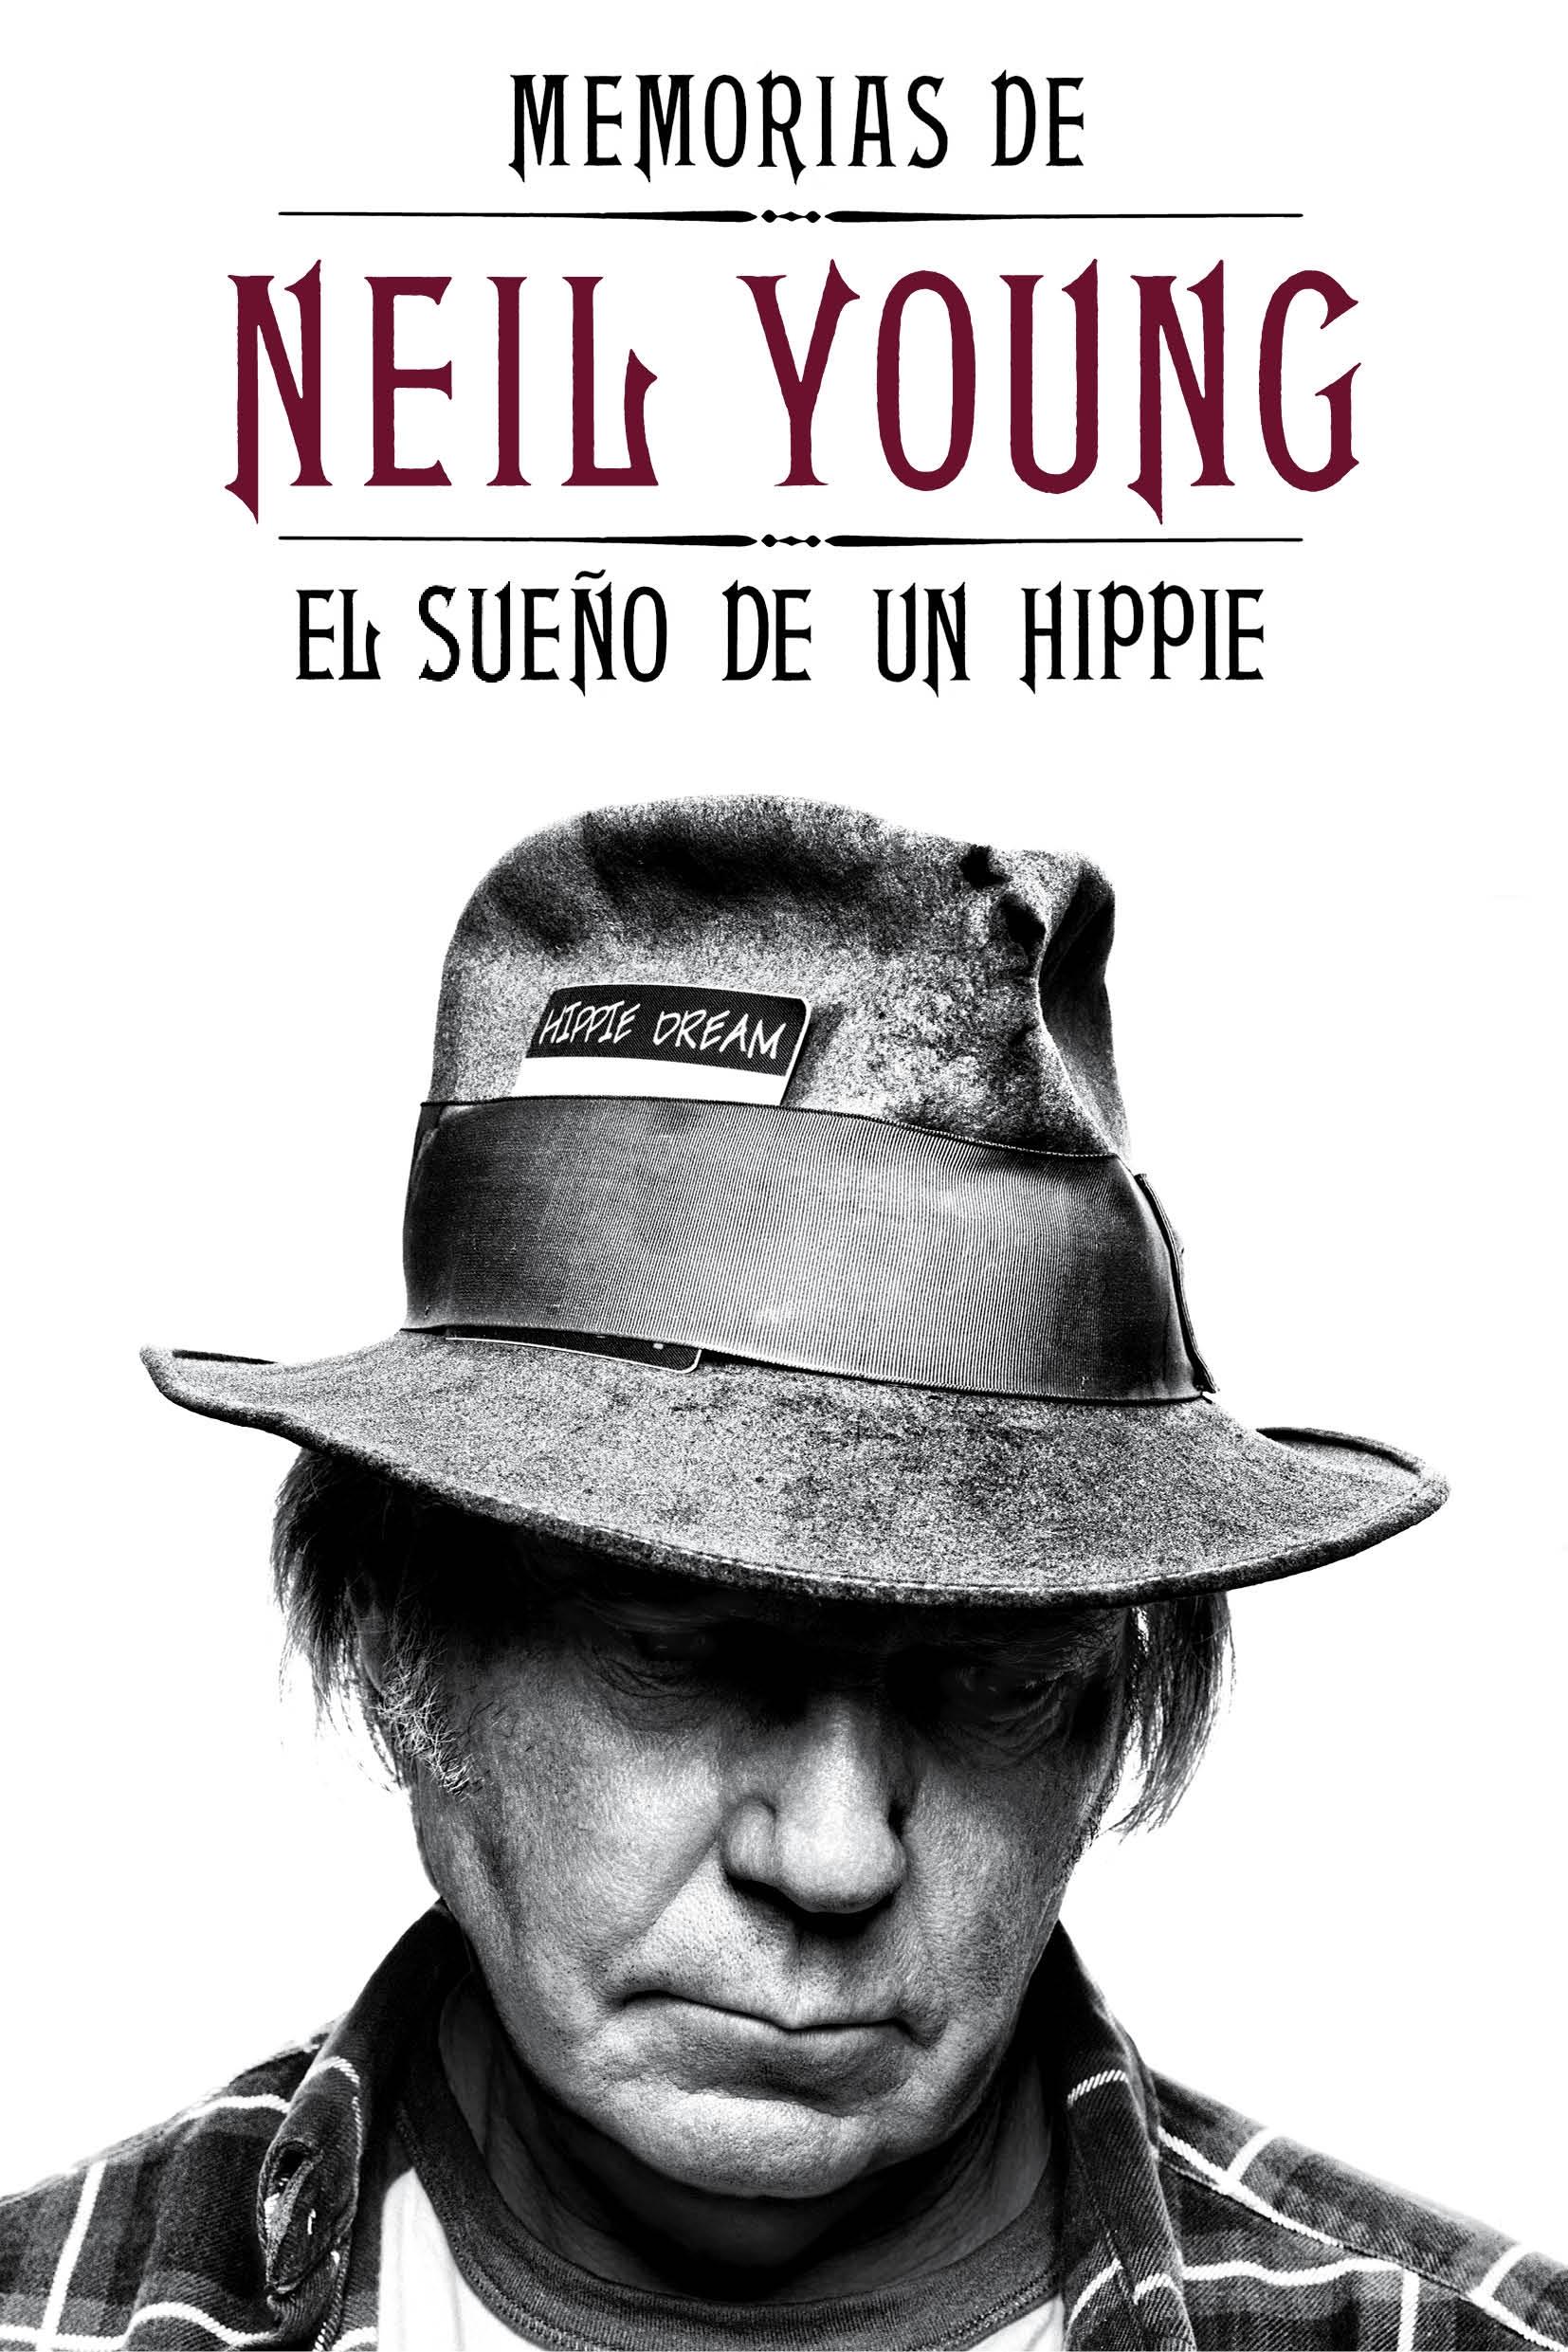 Memorias de Neil Young "El Sueño de un Hippie"